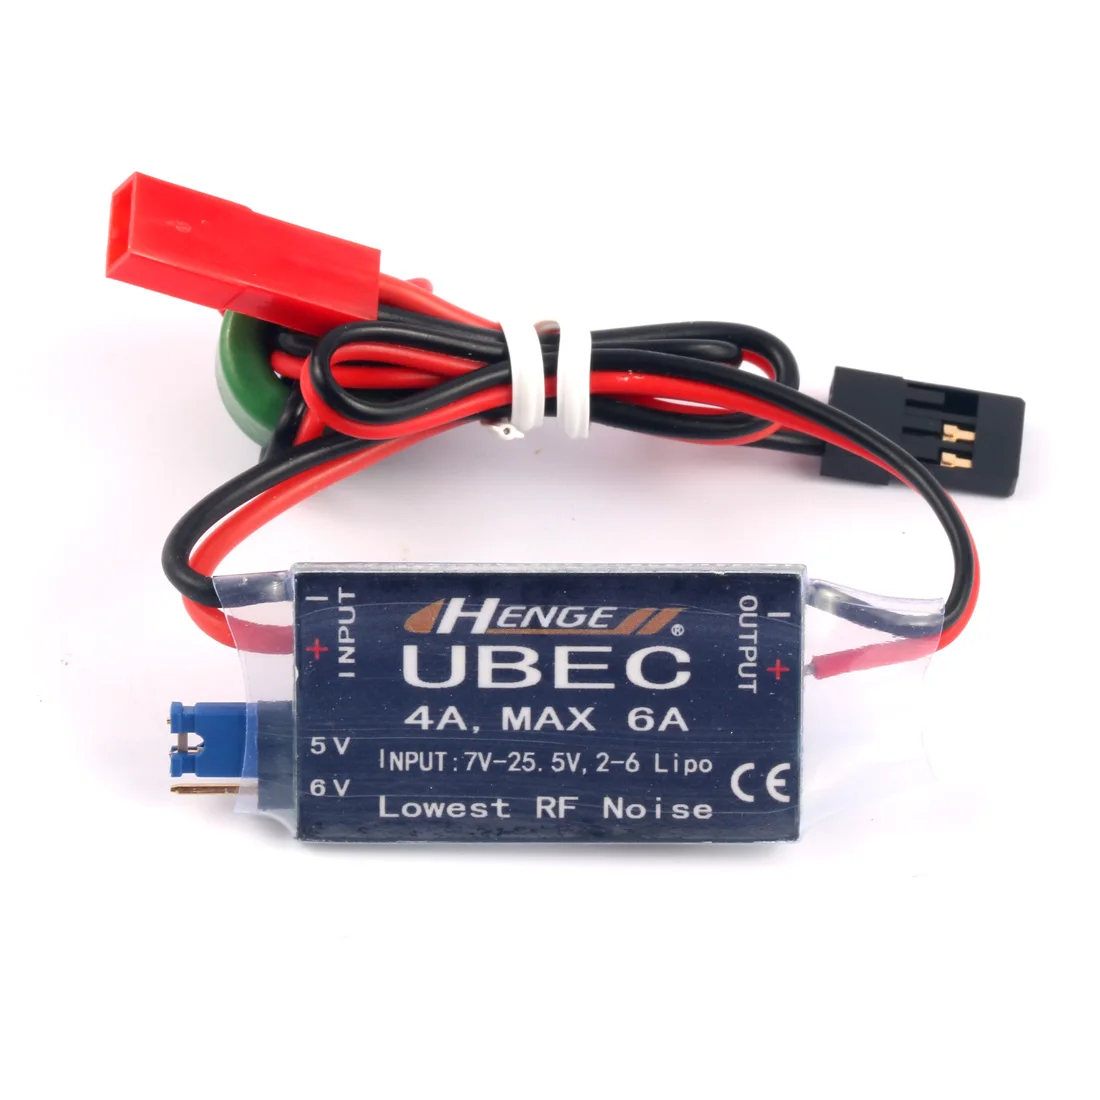 JMT 4A UBEC entrée 7 V-25.5 V 2-6S Lipo sortie 5V 6 V/4A continu Max 6A Mode de commutation BEC pour RCDrone quadrirotor voiture accessoire